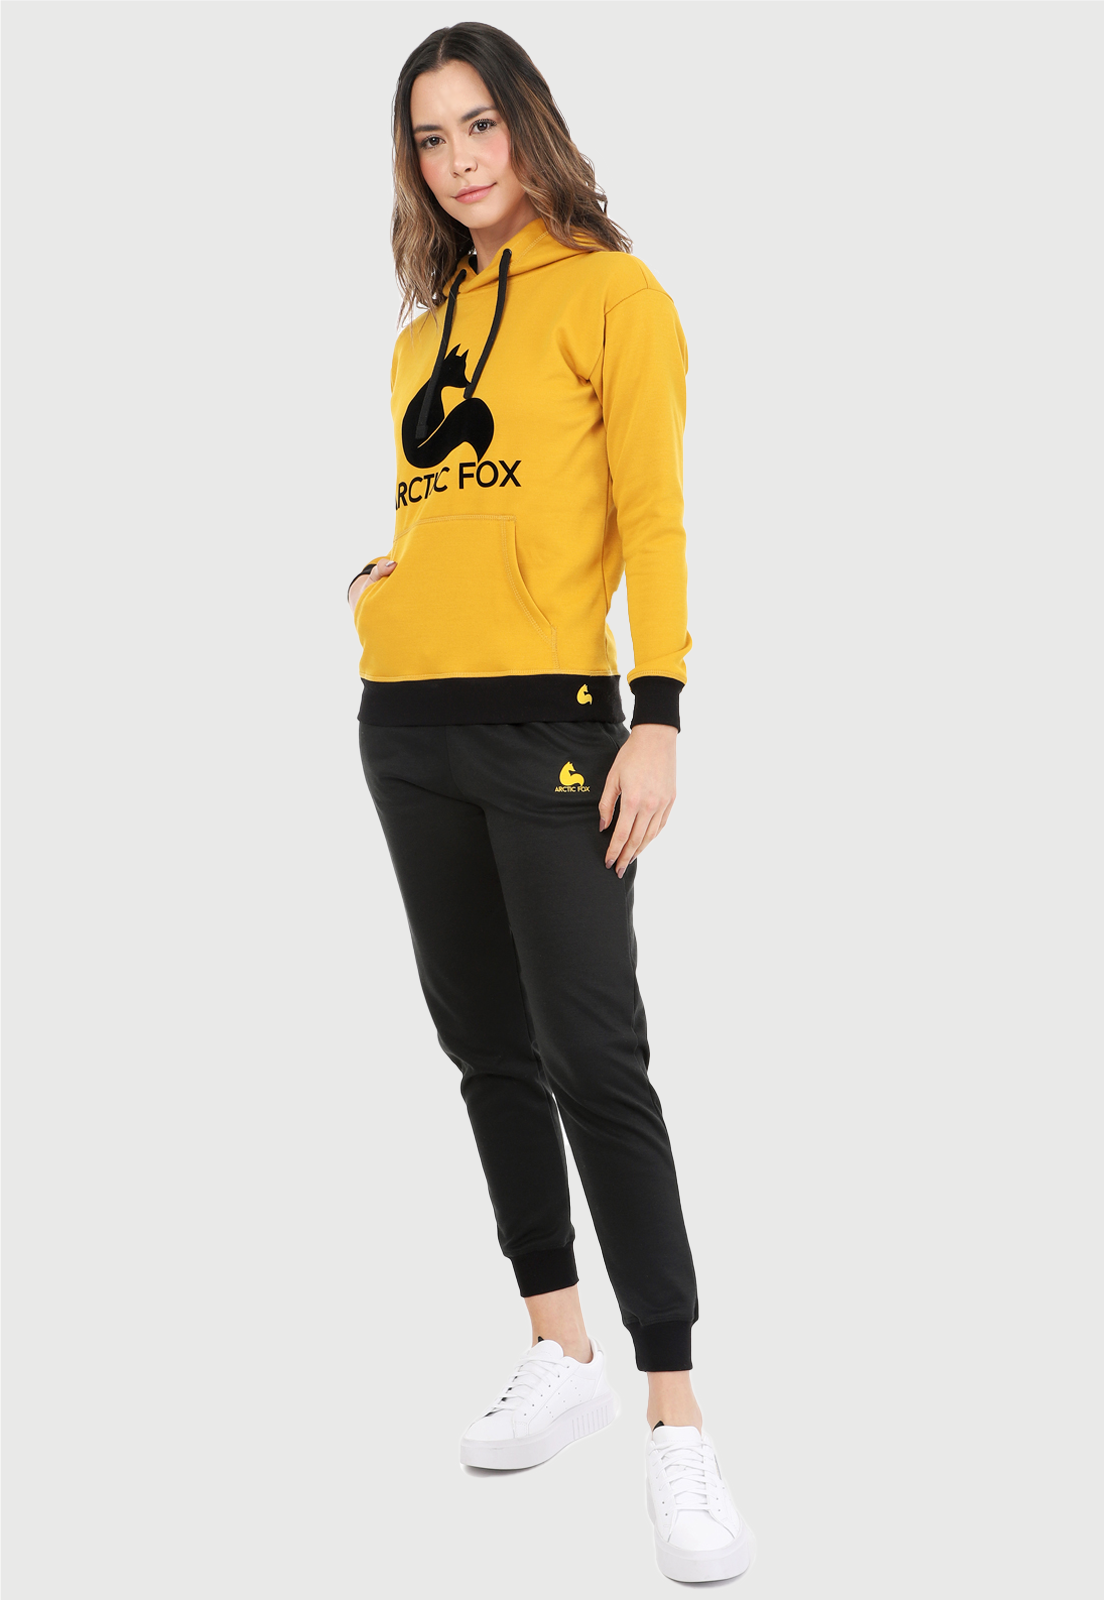 Mujer vistiendo la sudadera para mujer conjunto buzo hoodie color mostaza con capota forrada en algodón perchado negro con el zorro de Arctic Fox estampado en terciopelo negro al frente y pantalón de sudadera negro con logotipo en color mostaza.